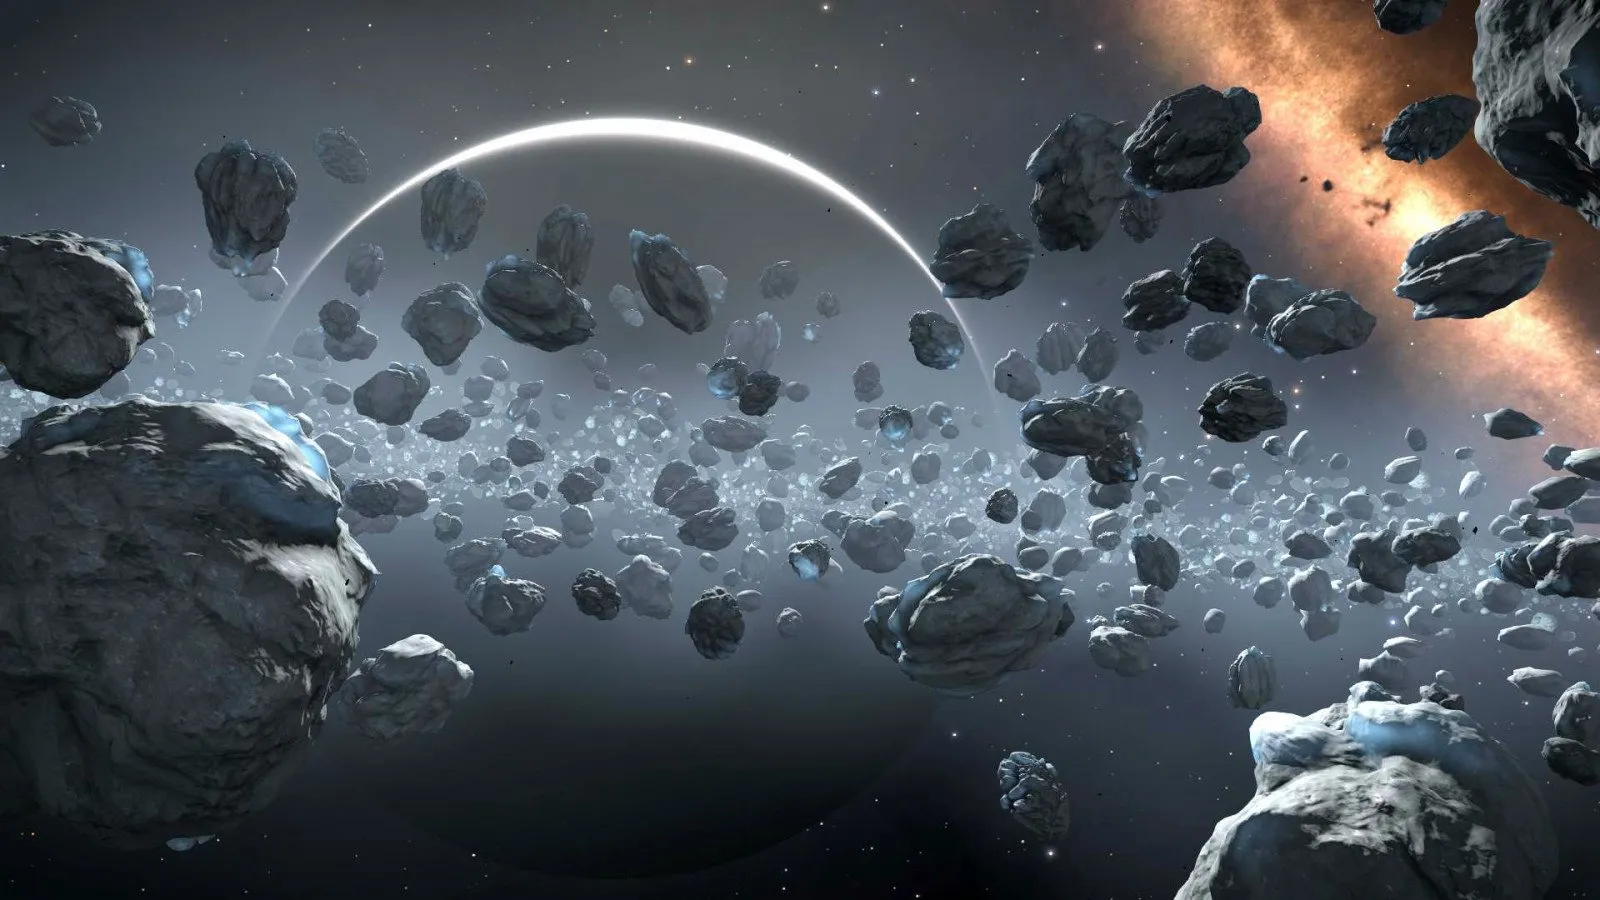 
											
											Quyosh tizimidagi asteroidlardan birining tabiiy yo‘ldoshi borligi aniqlandi
											
											